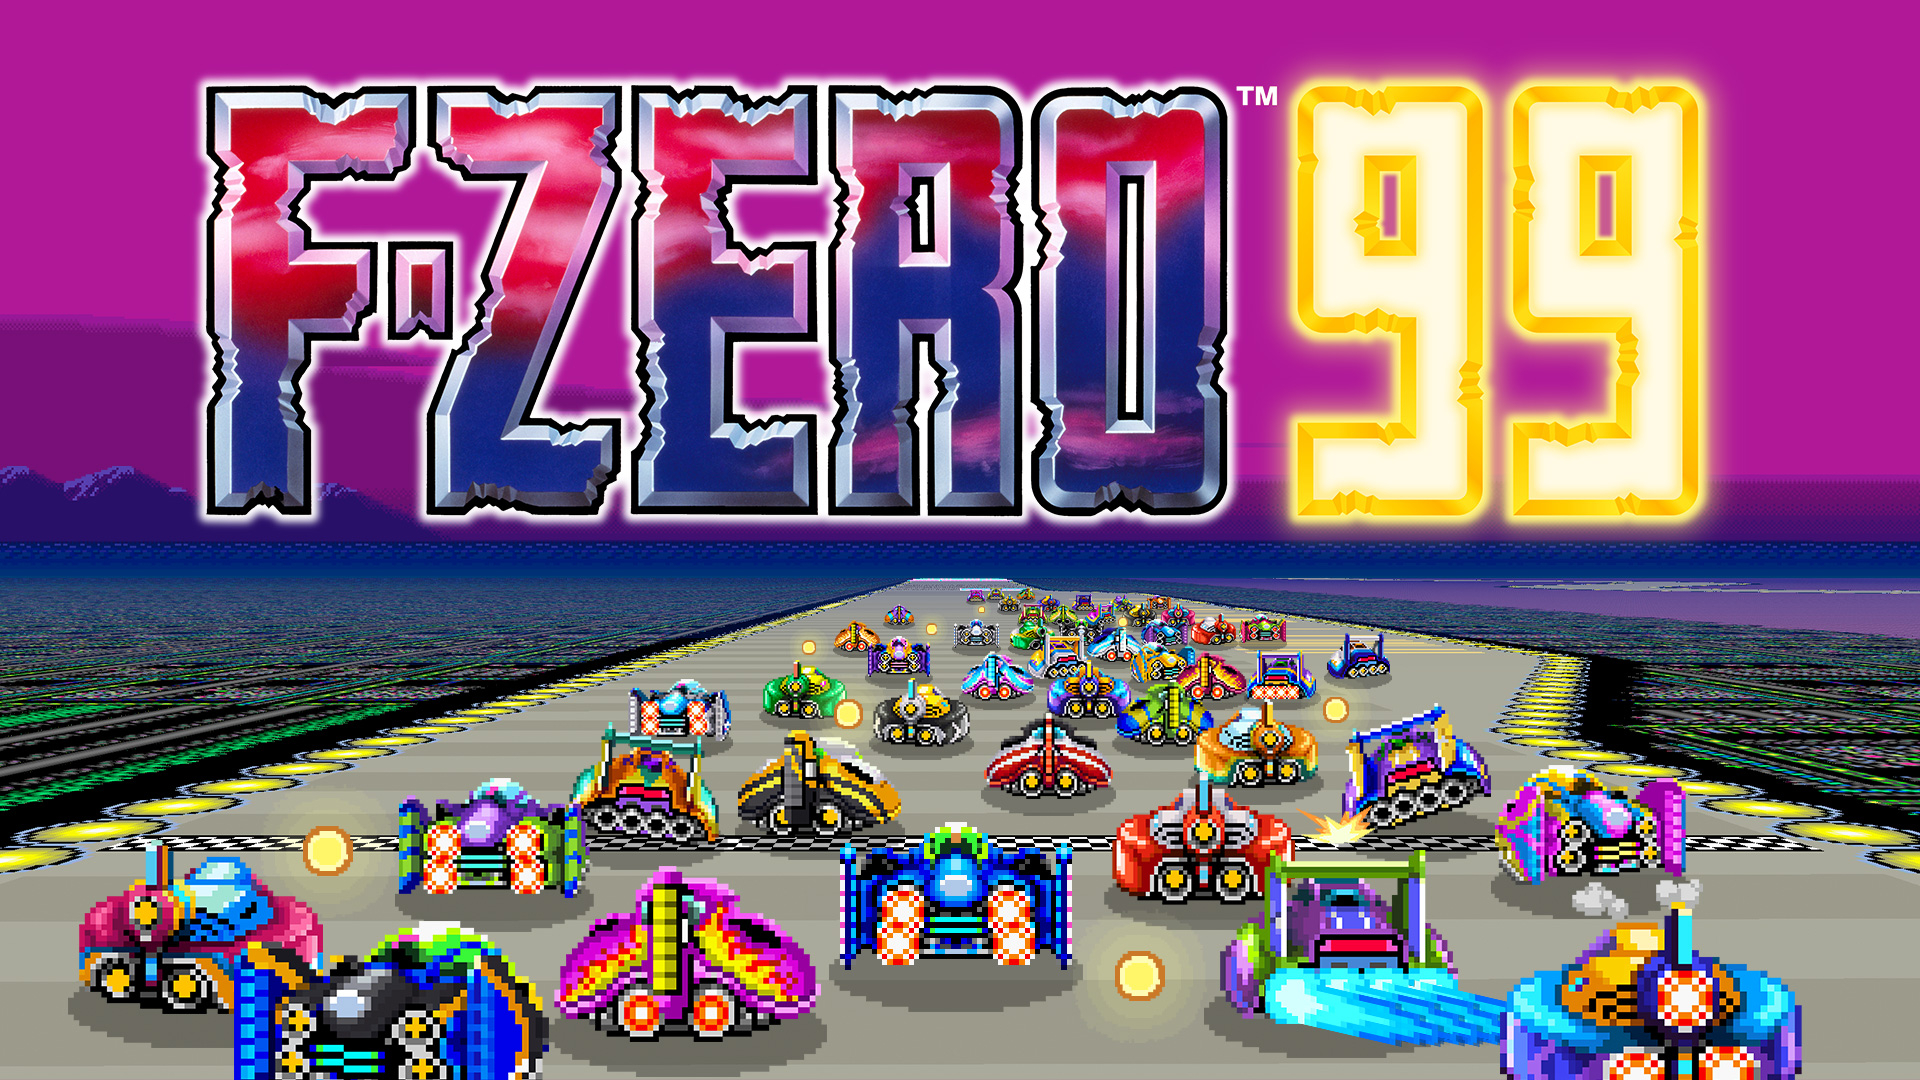 f zero 99 | F-Zero | เปิดตัว F-Zero 99 เกมแข่งรถ Battle Royale และ การกลับมาของเกมในตำนาน!